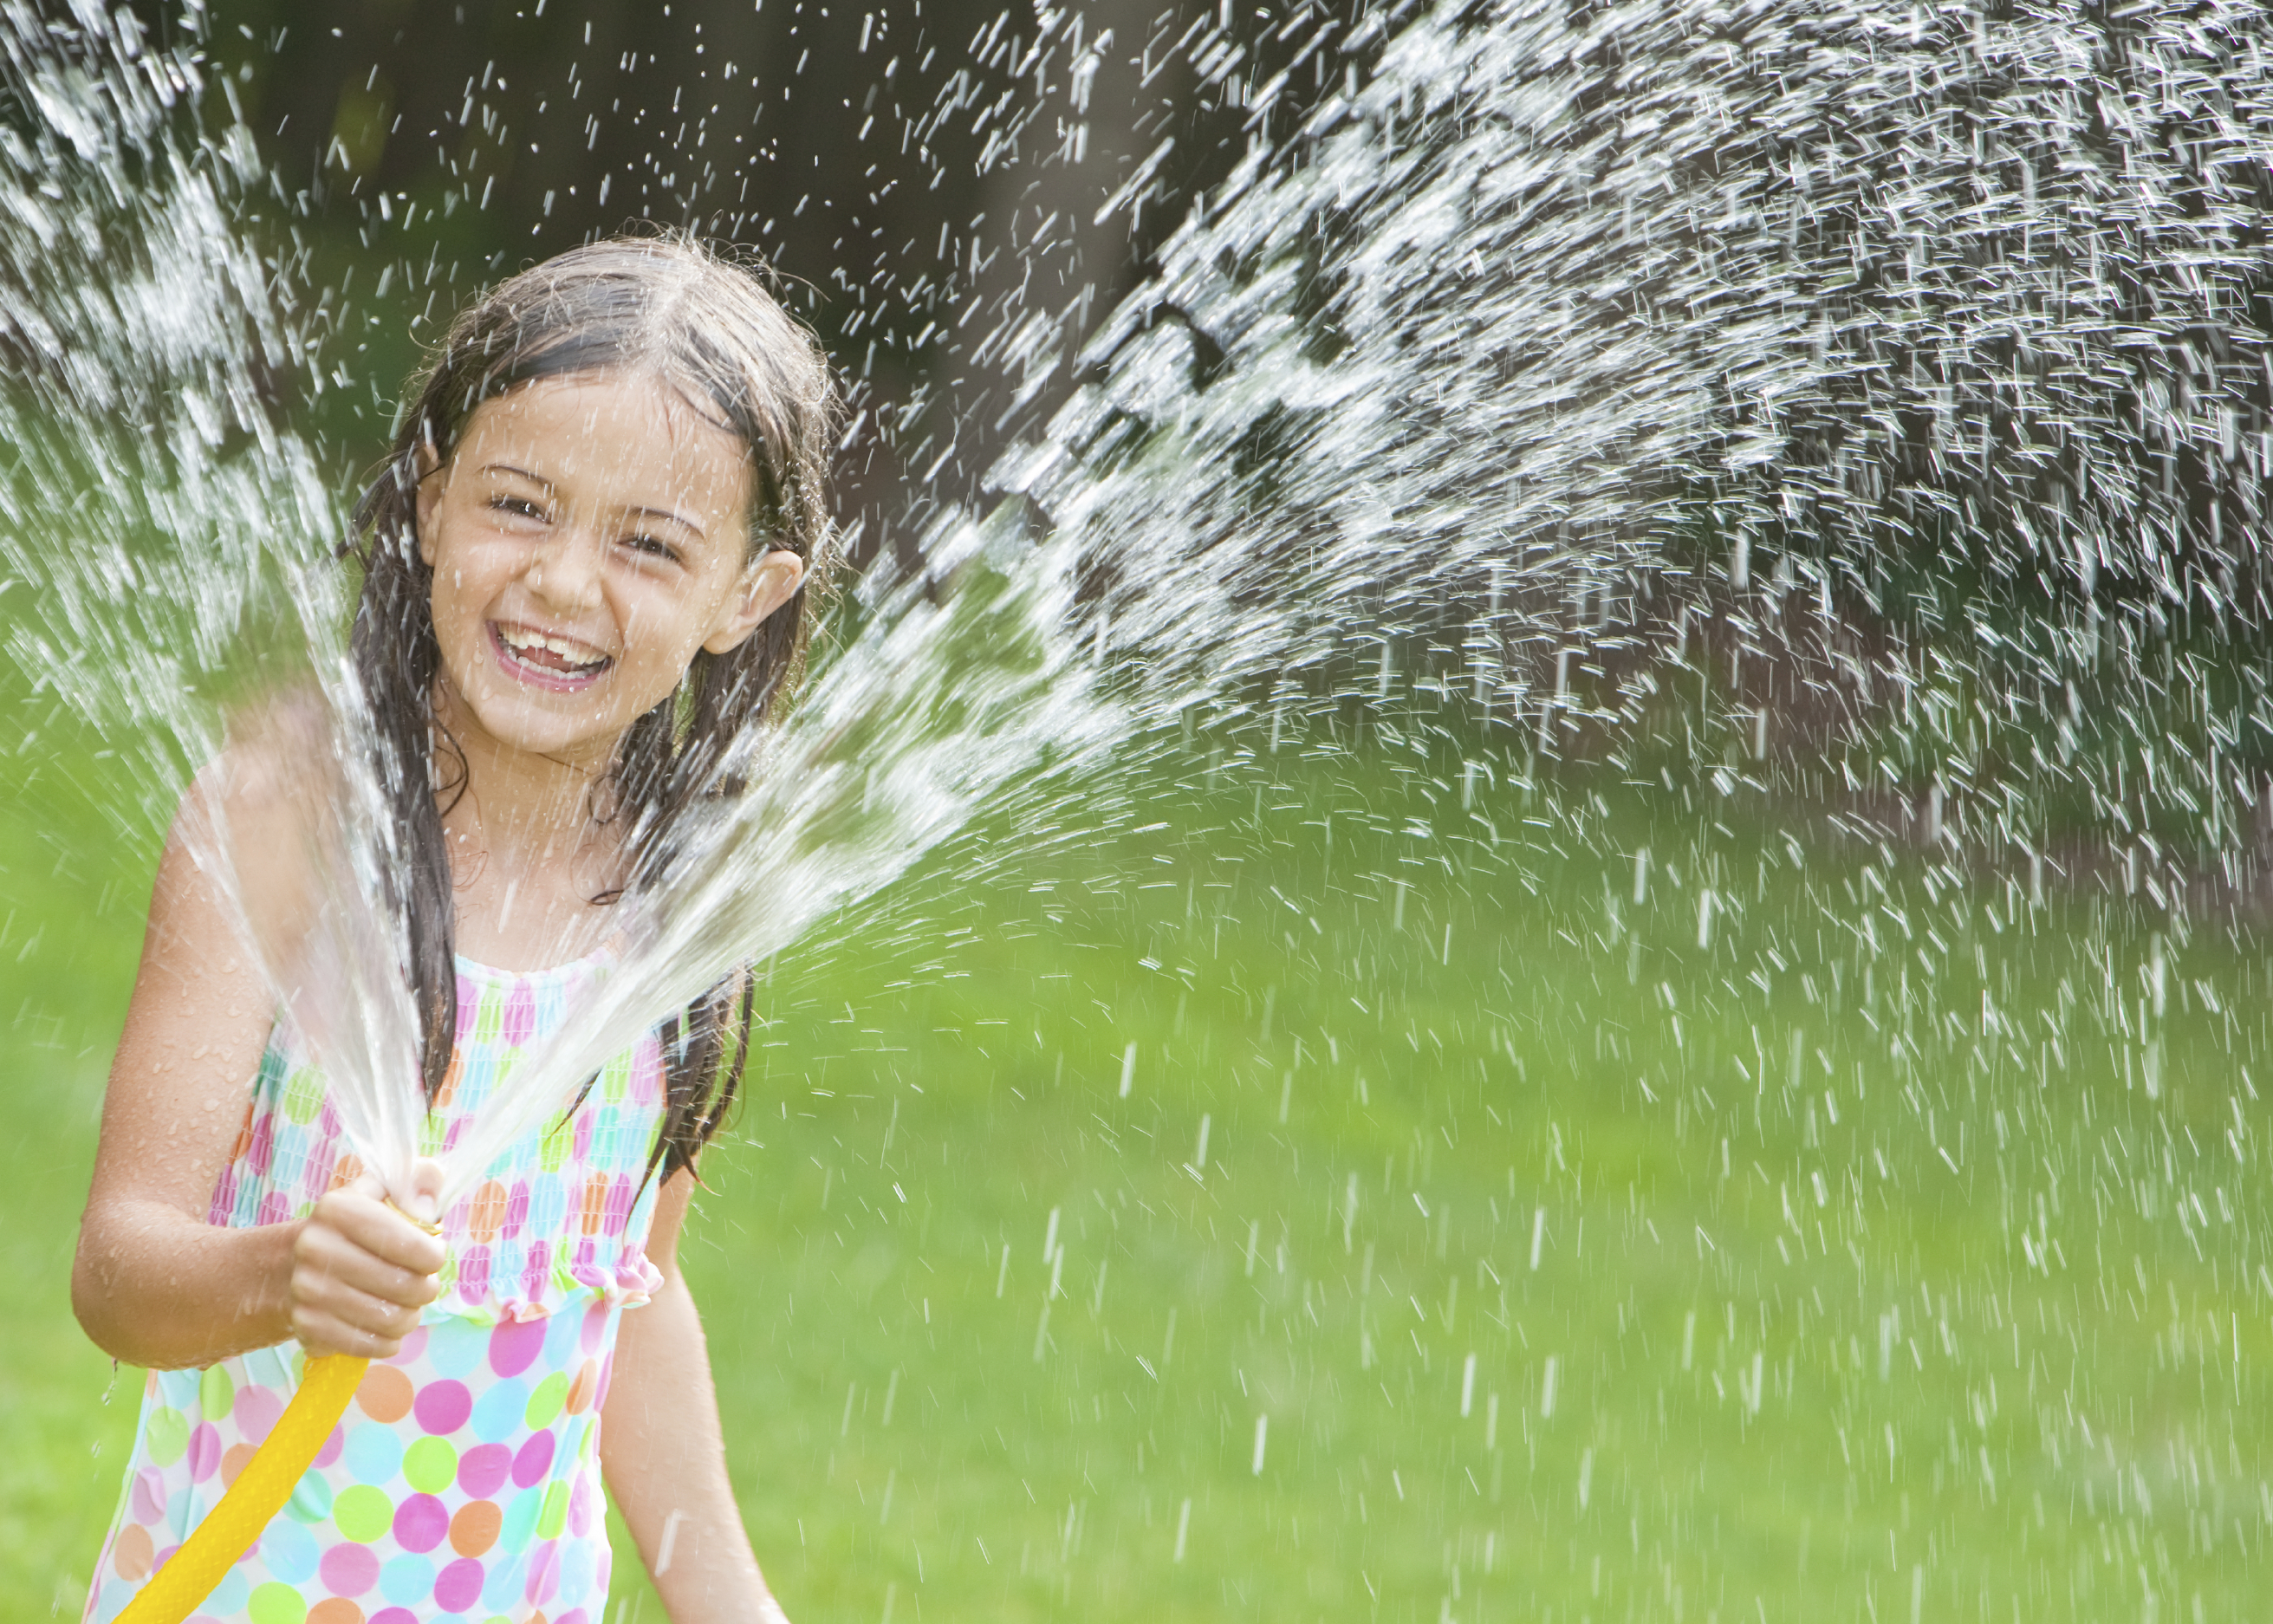 Fun Water Play Activities for Preschoolers